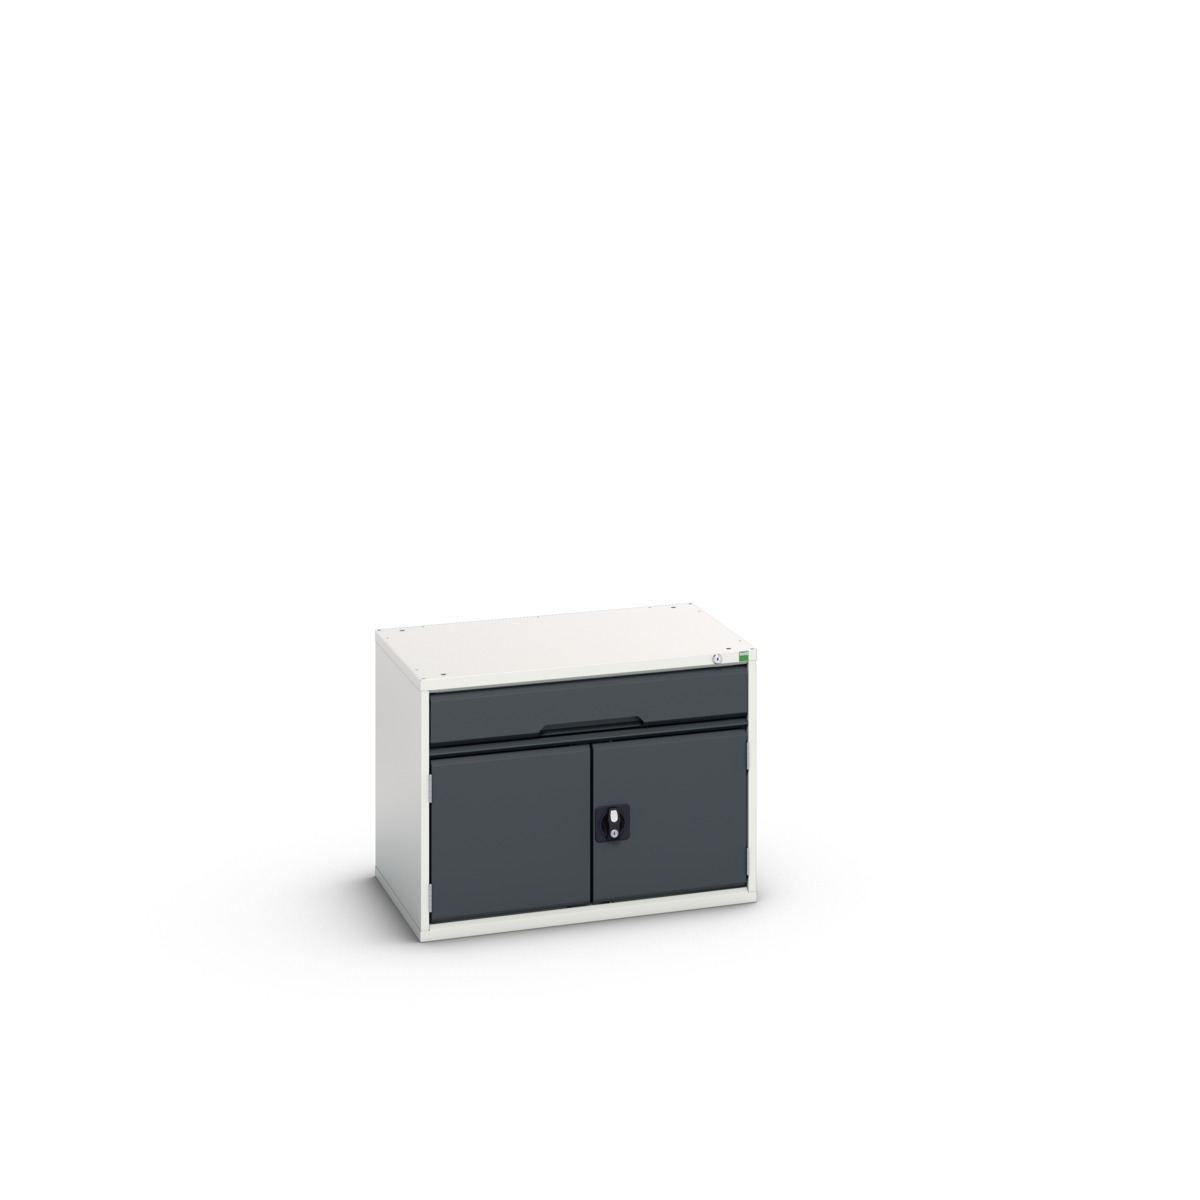 16925106. - verso drawer-door cabinet